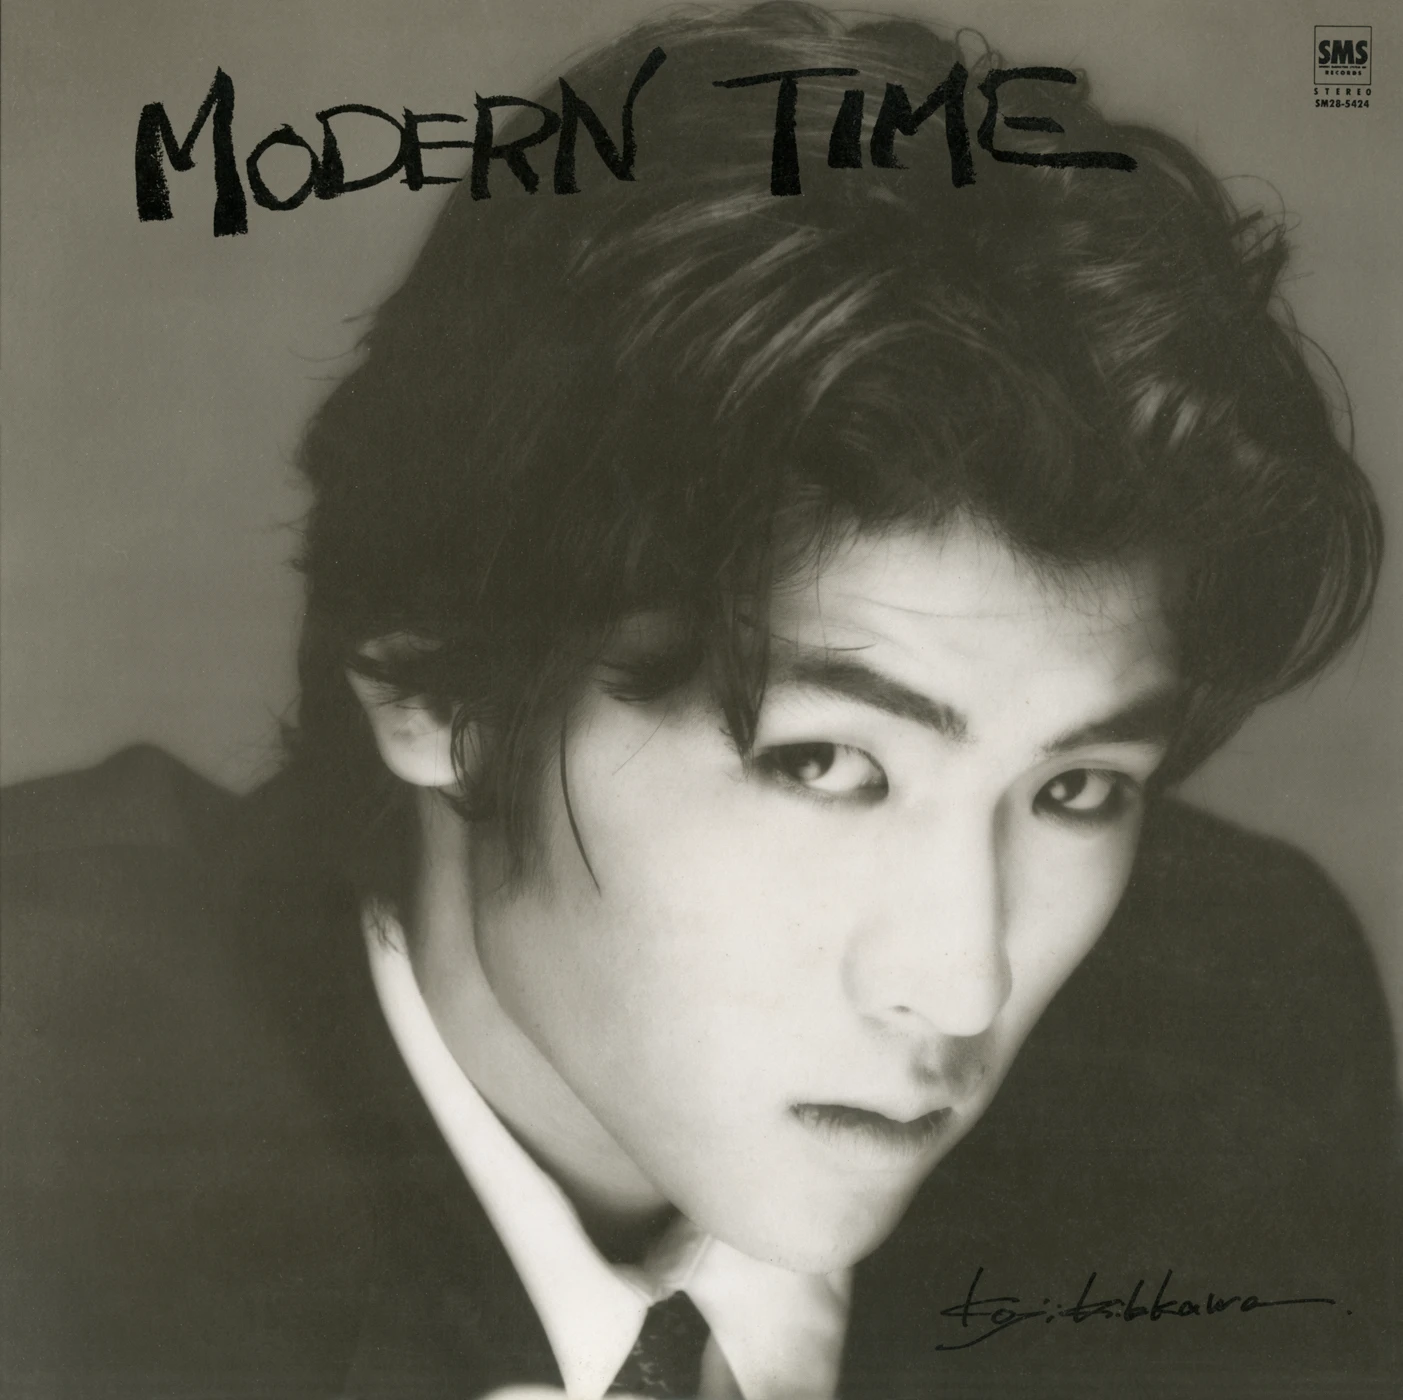 Modern Time – 吉川晃司